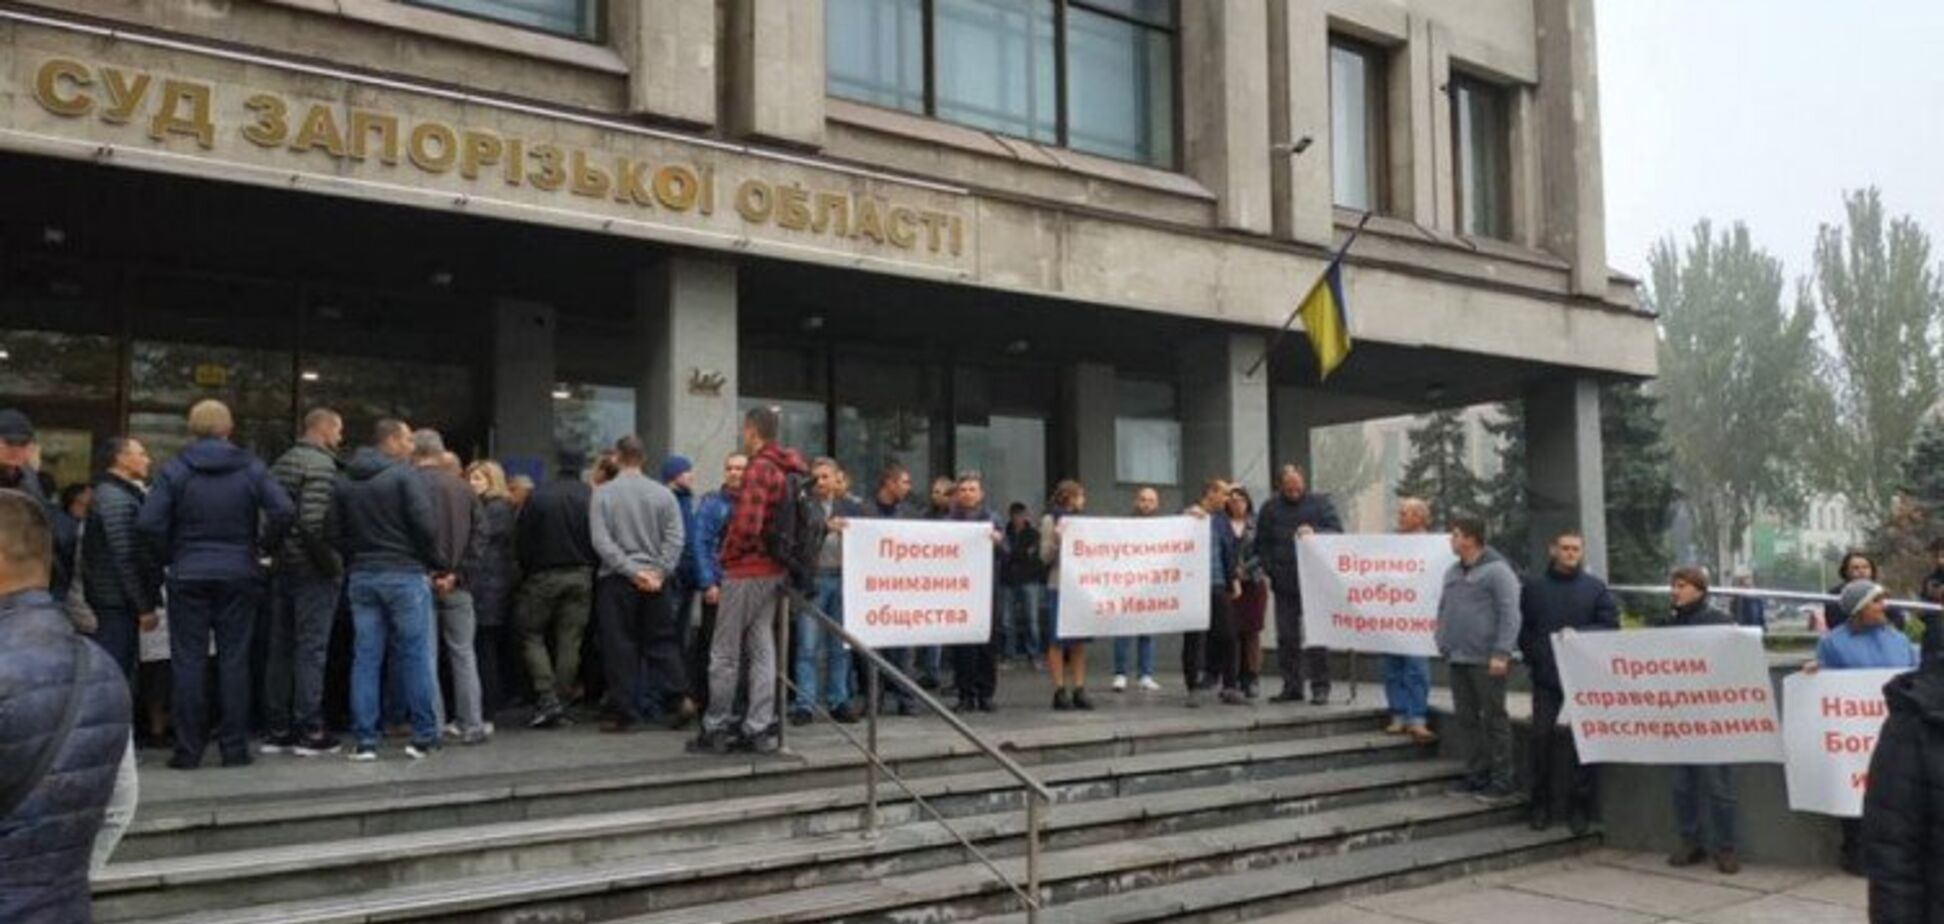 Директора запорожского интерната заподозрили в торговле детьми: местные жители устроили протест